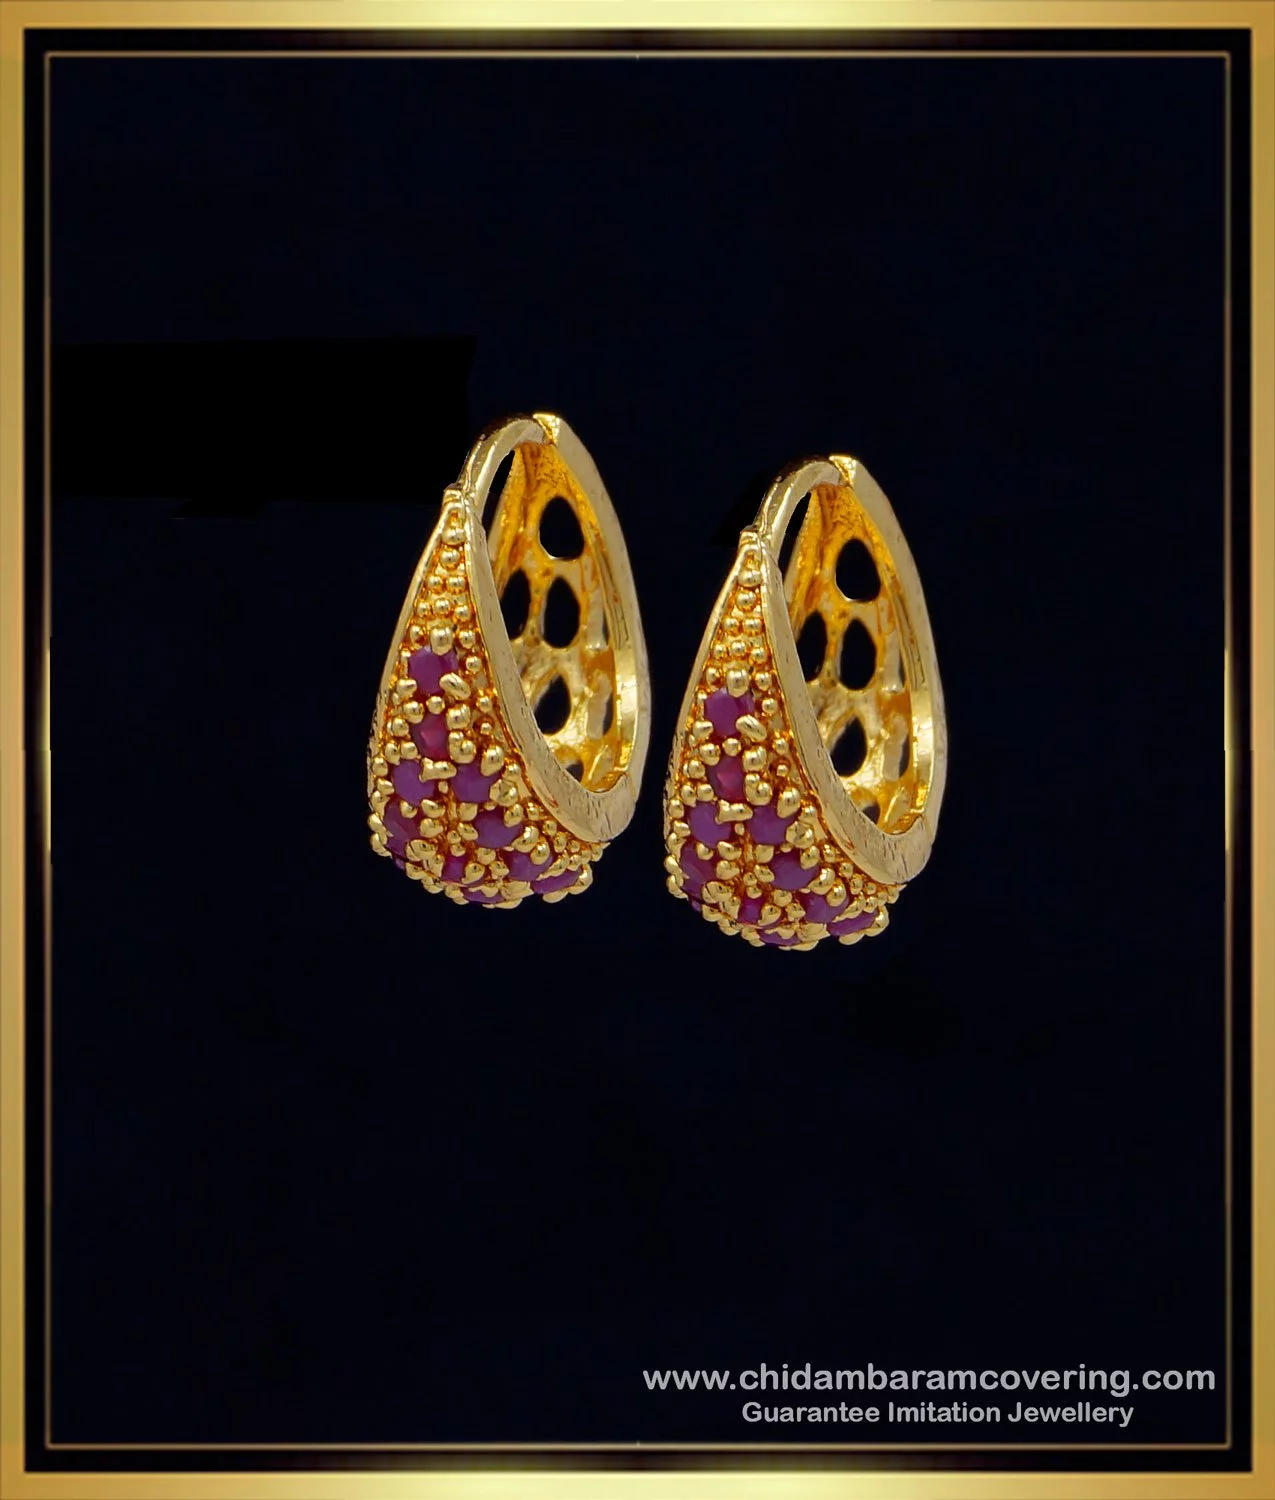 Stone Drop Earrings - Purpose Jewelry